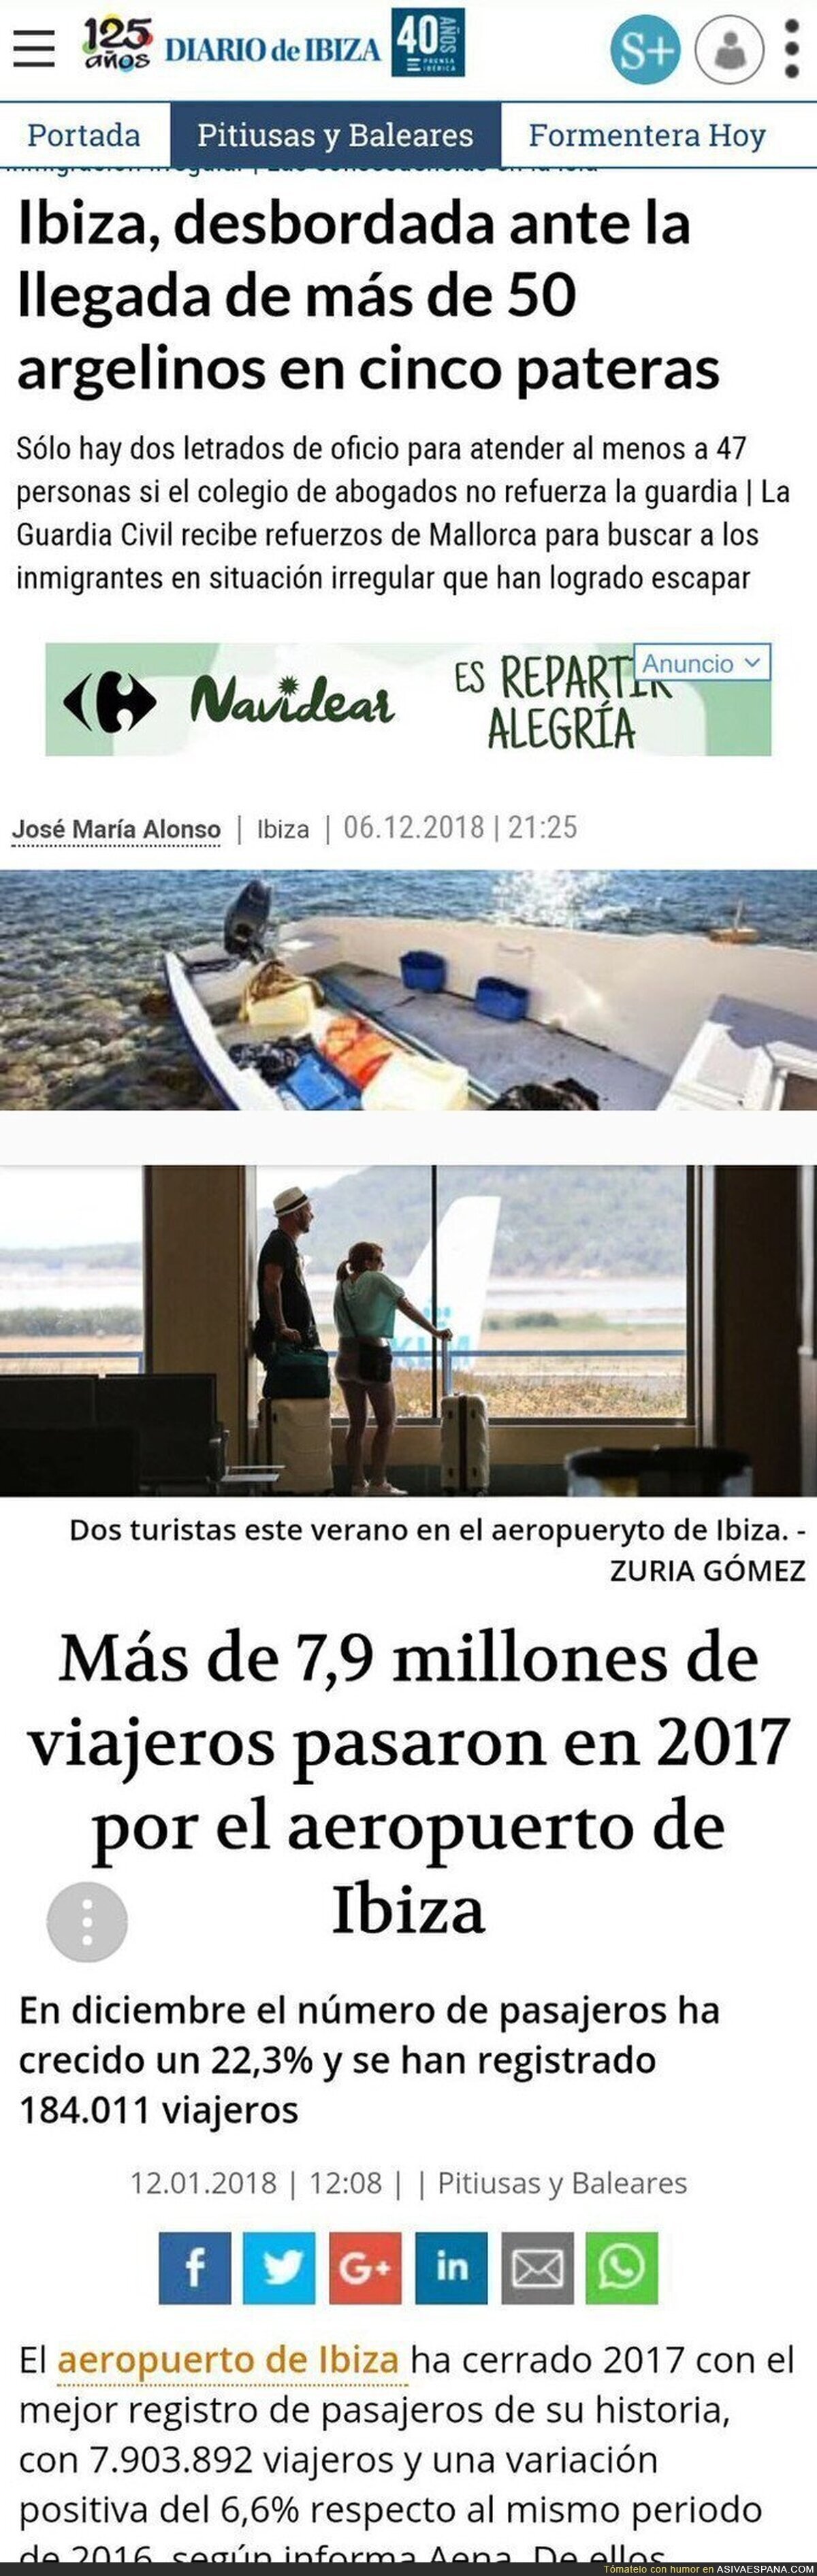 Los inmigrantes desbordan Ibiza pero millones de turistas no